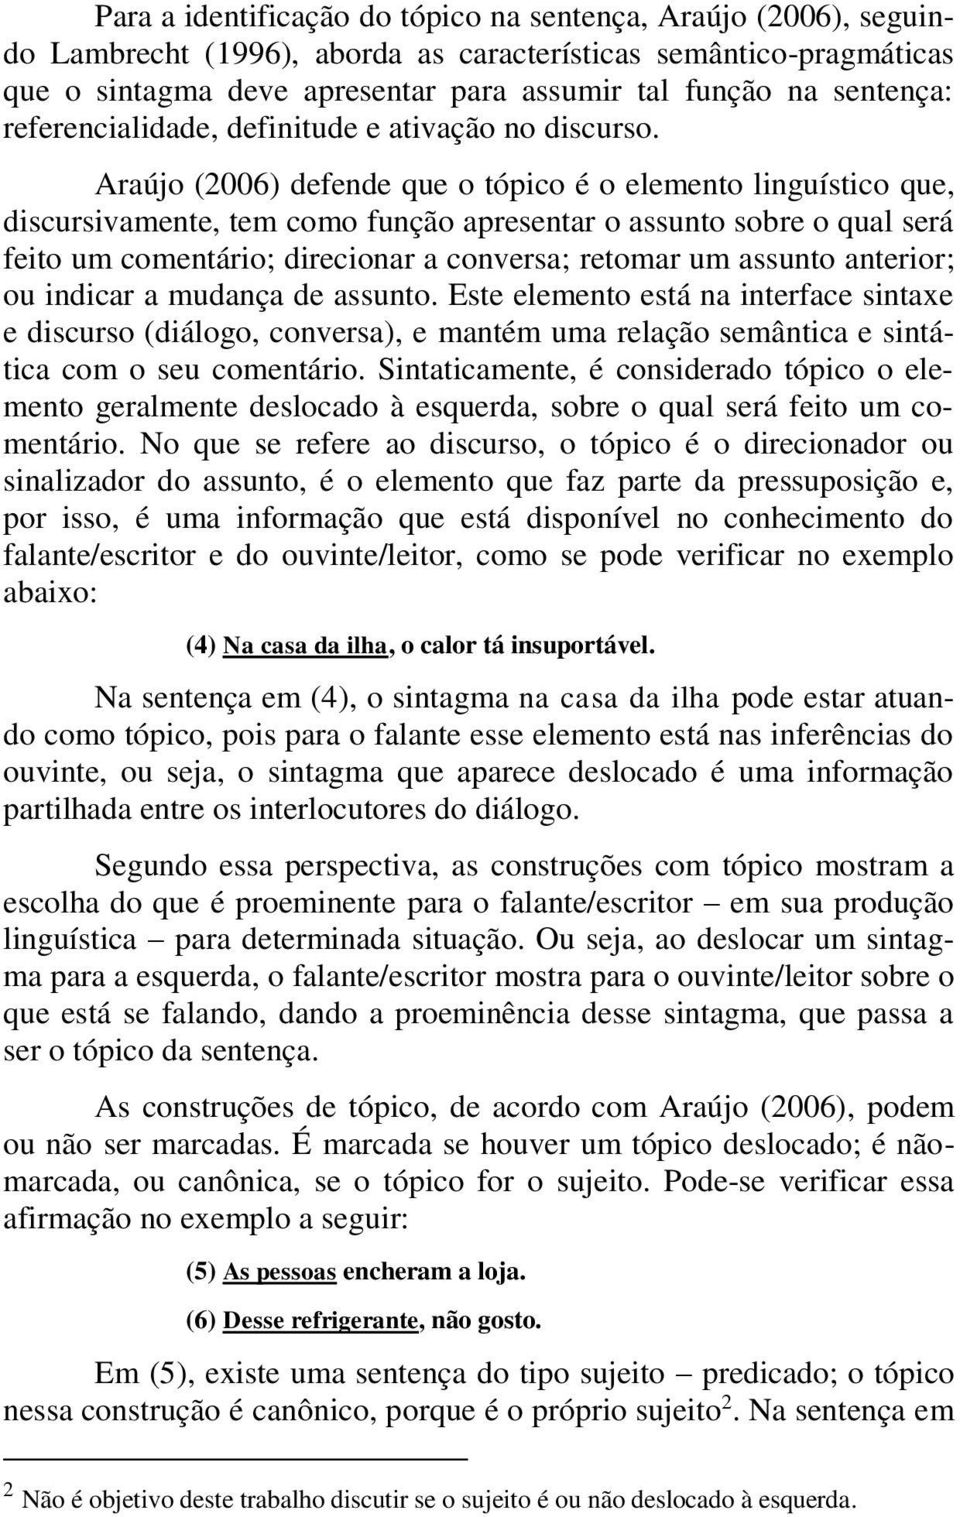 Araújo (2006) defende que o tópico é o elemento linguístico que, discursivamente, tem como função apresentar o assunto sobre o qual será feito um comentário; direcionar a conversa; retomar um assunto